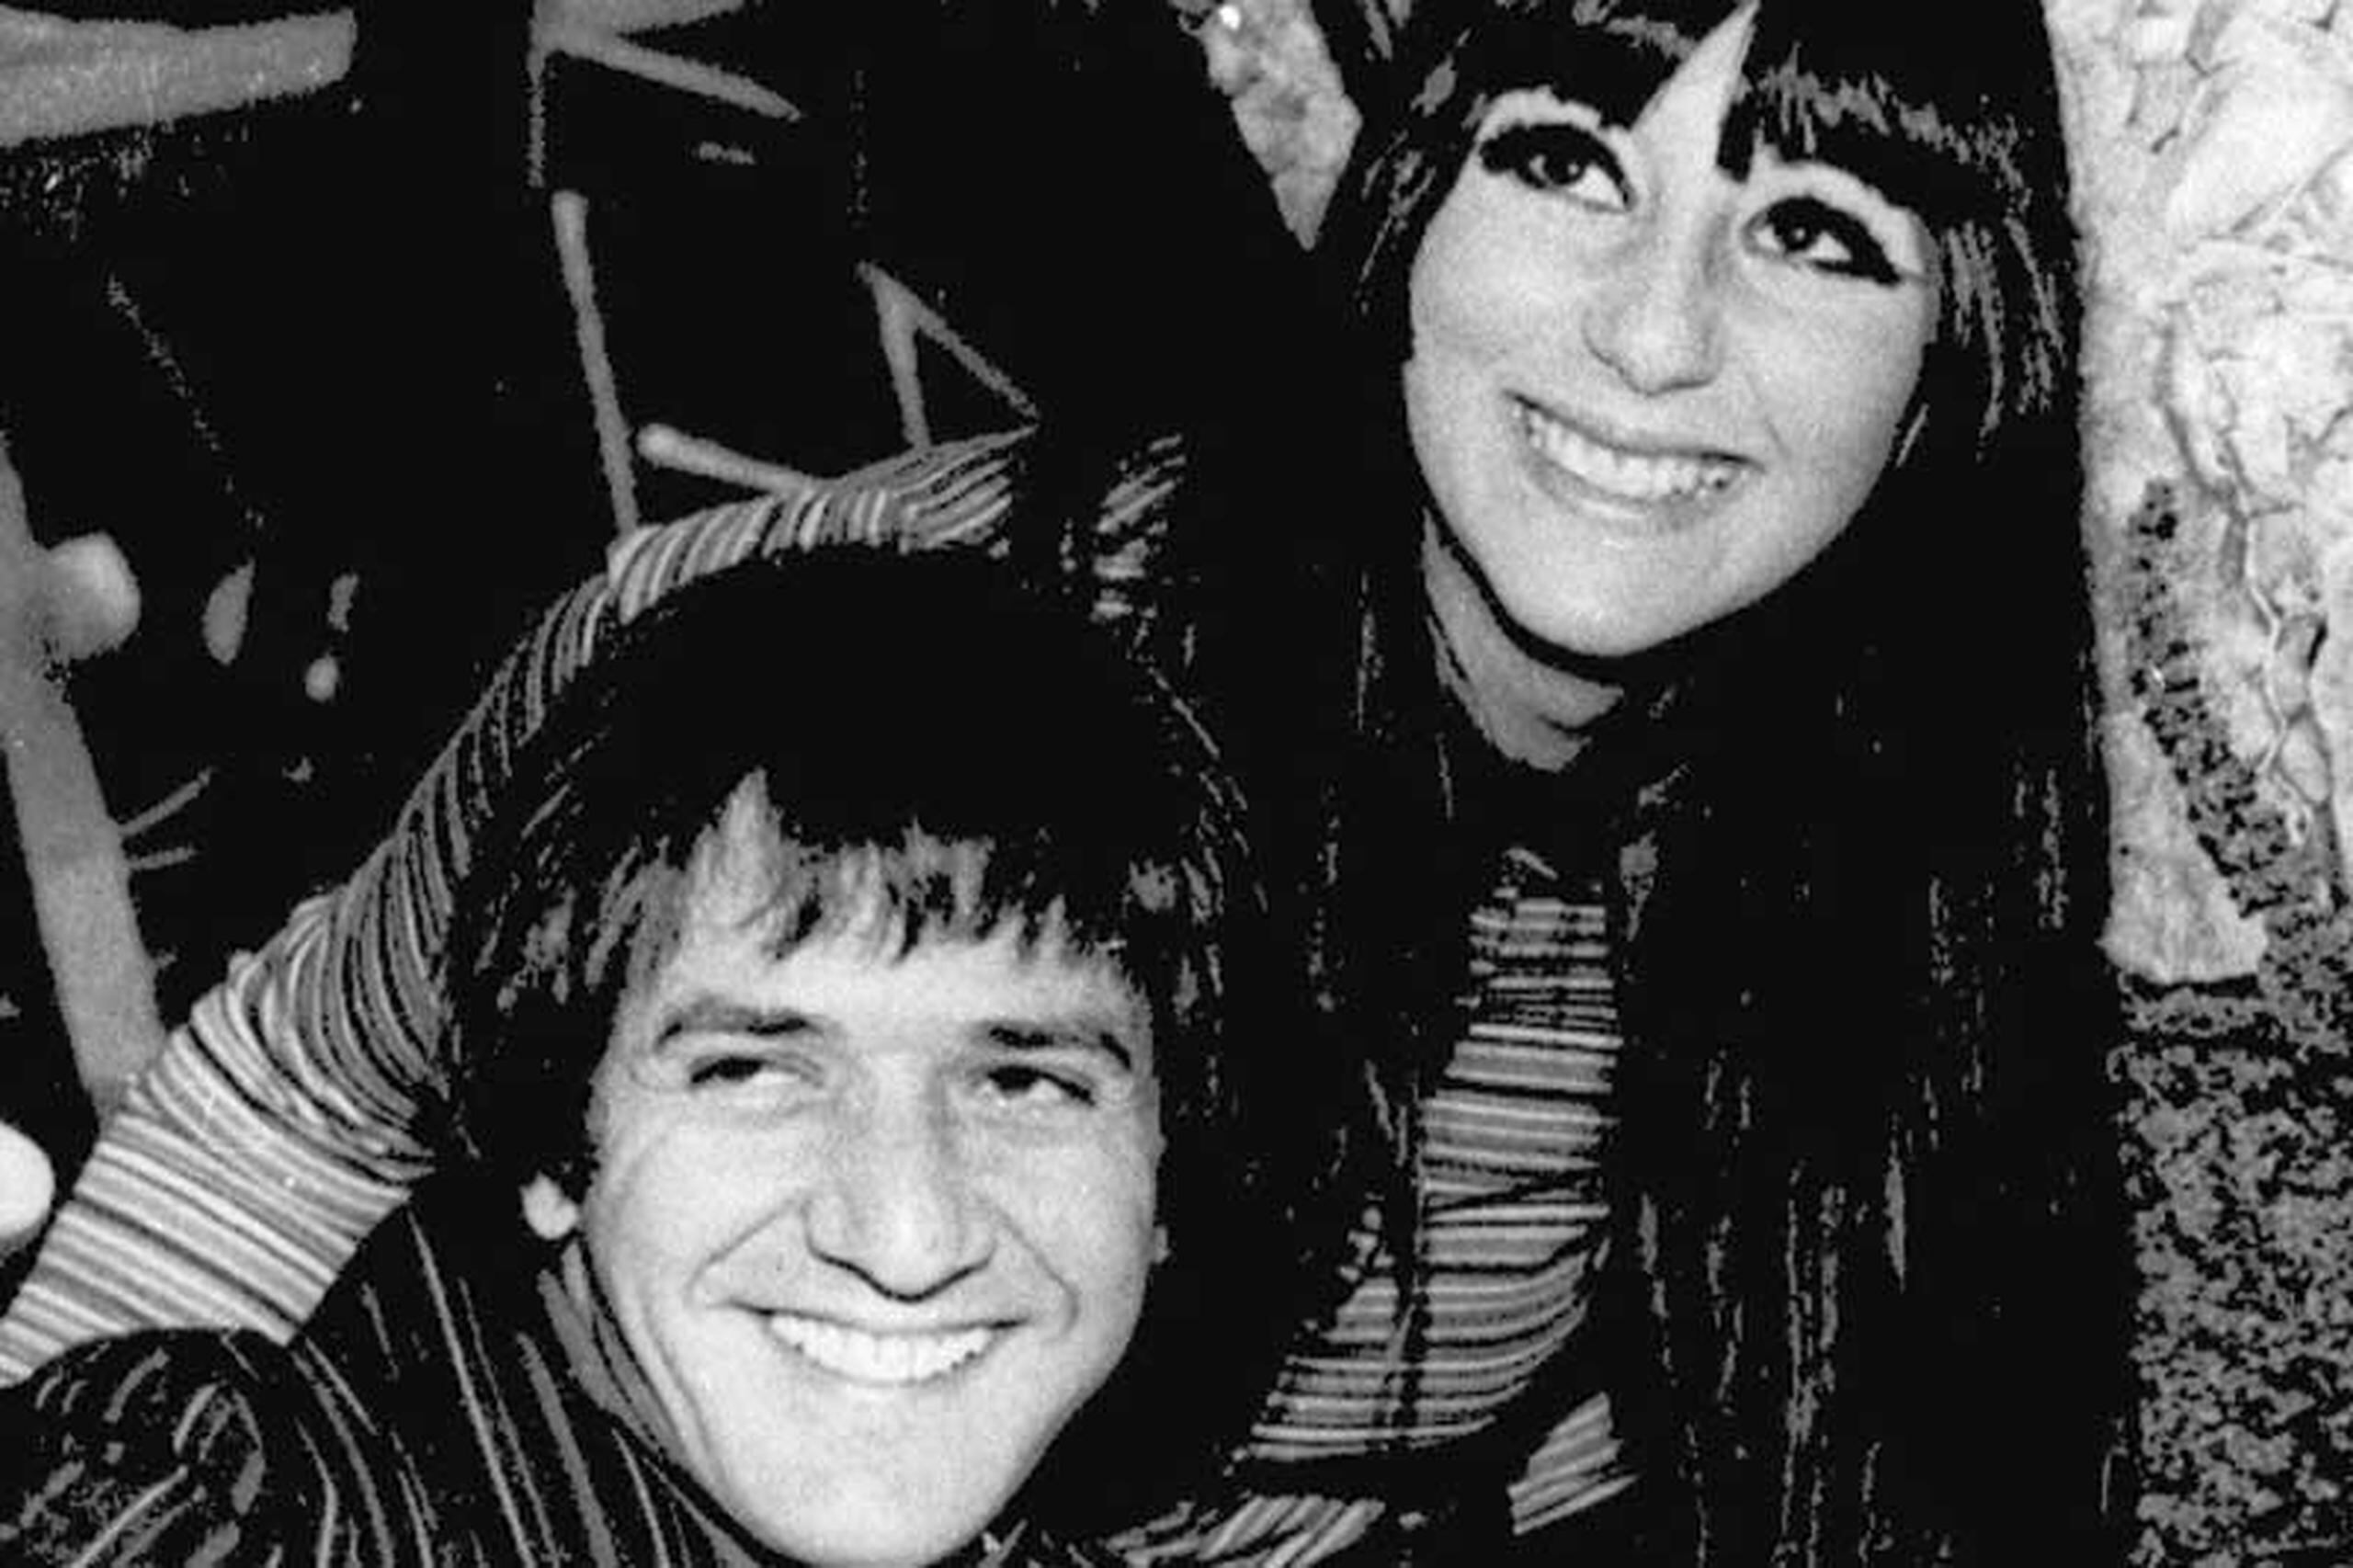 Sonny y Cher se conocieron cuando ella tenía 16 años. Poco después se casaron. Su relación se prolongó hasta 1975. (Suministrada)